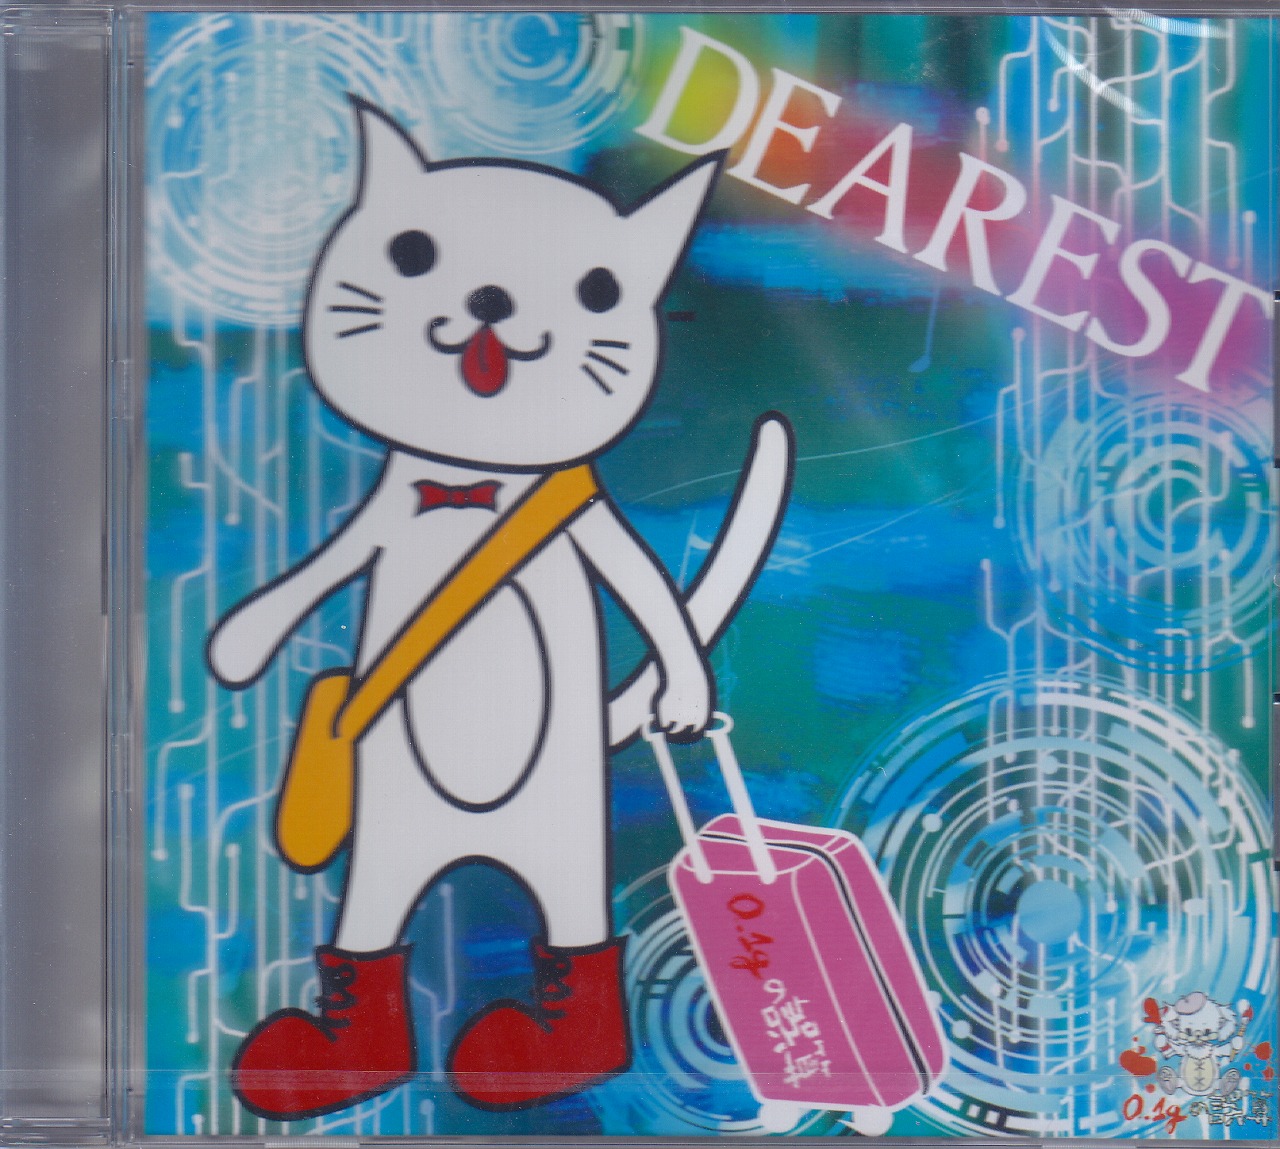 0.1gの誤算 ( レーテンイチグラムノゴサン )  の CD 【水田タイプ】DEAREST